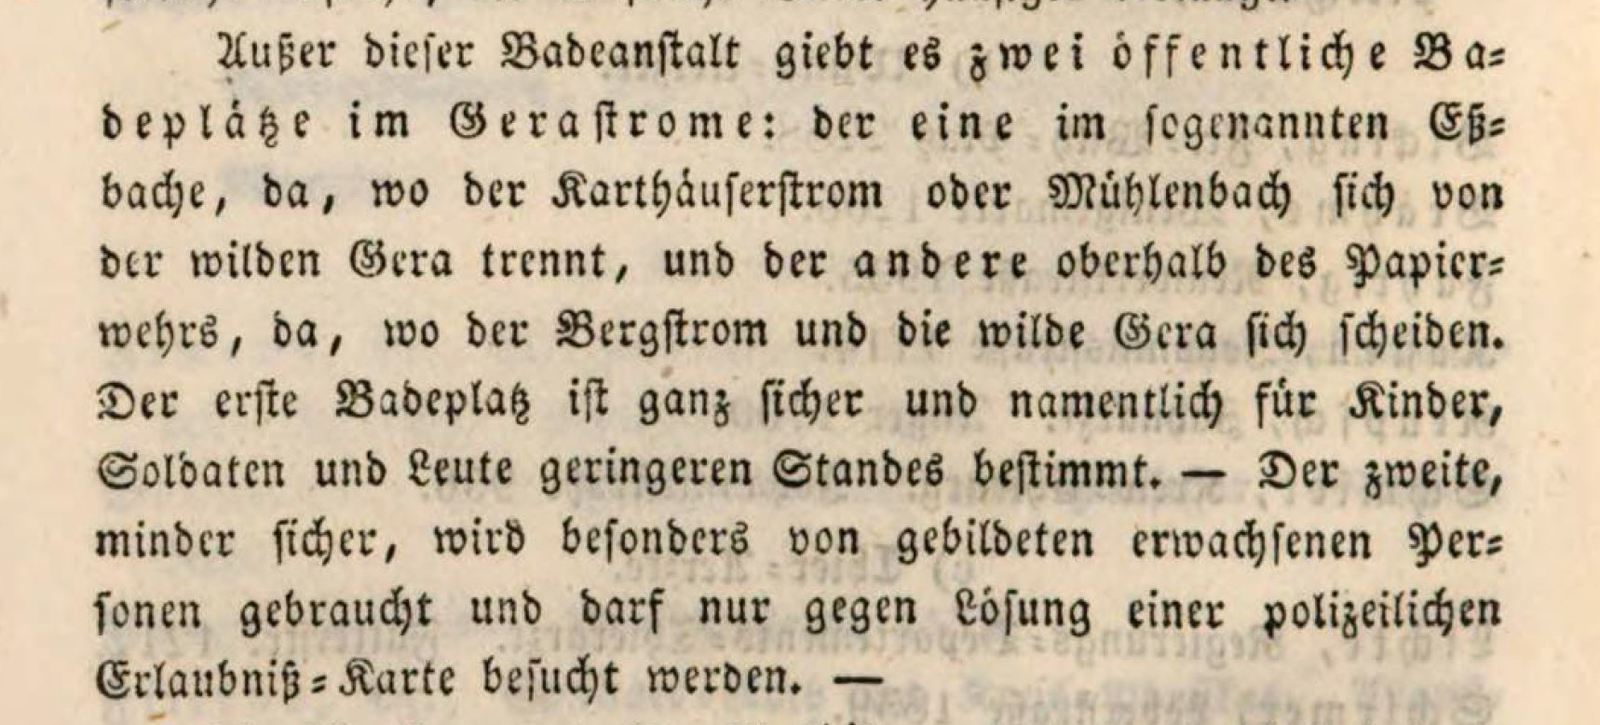 Reiseführer Erfurt 1848, Bild: Bayerische Staatsbibliothek